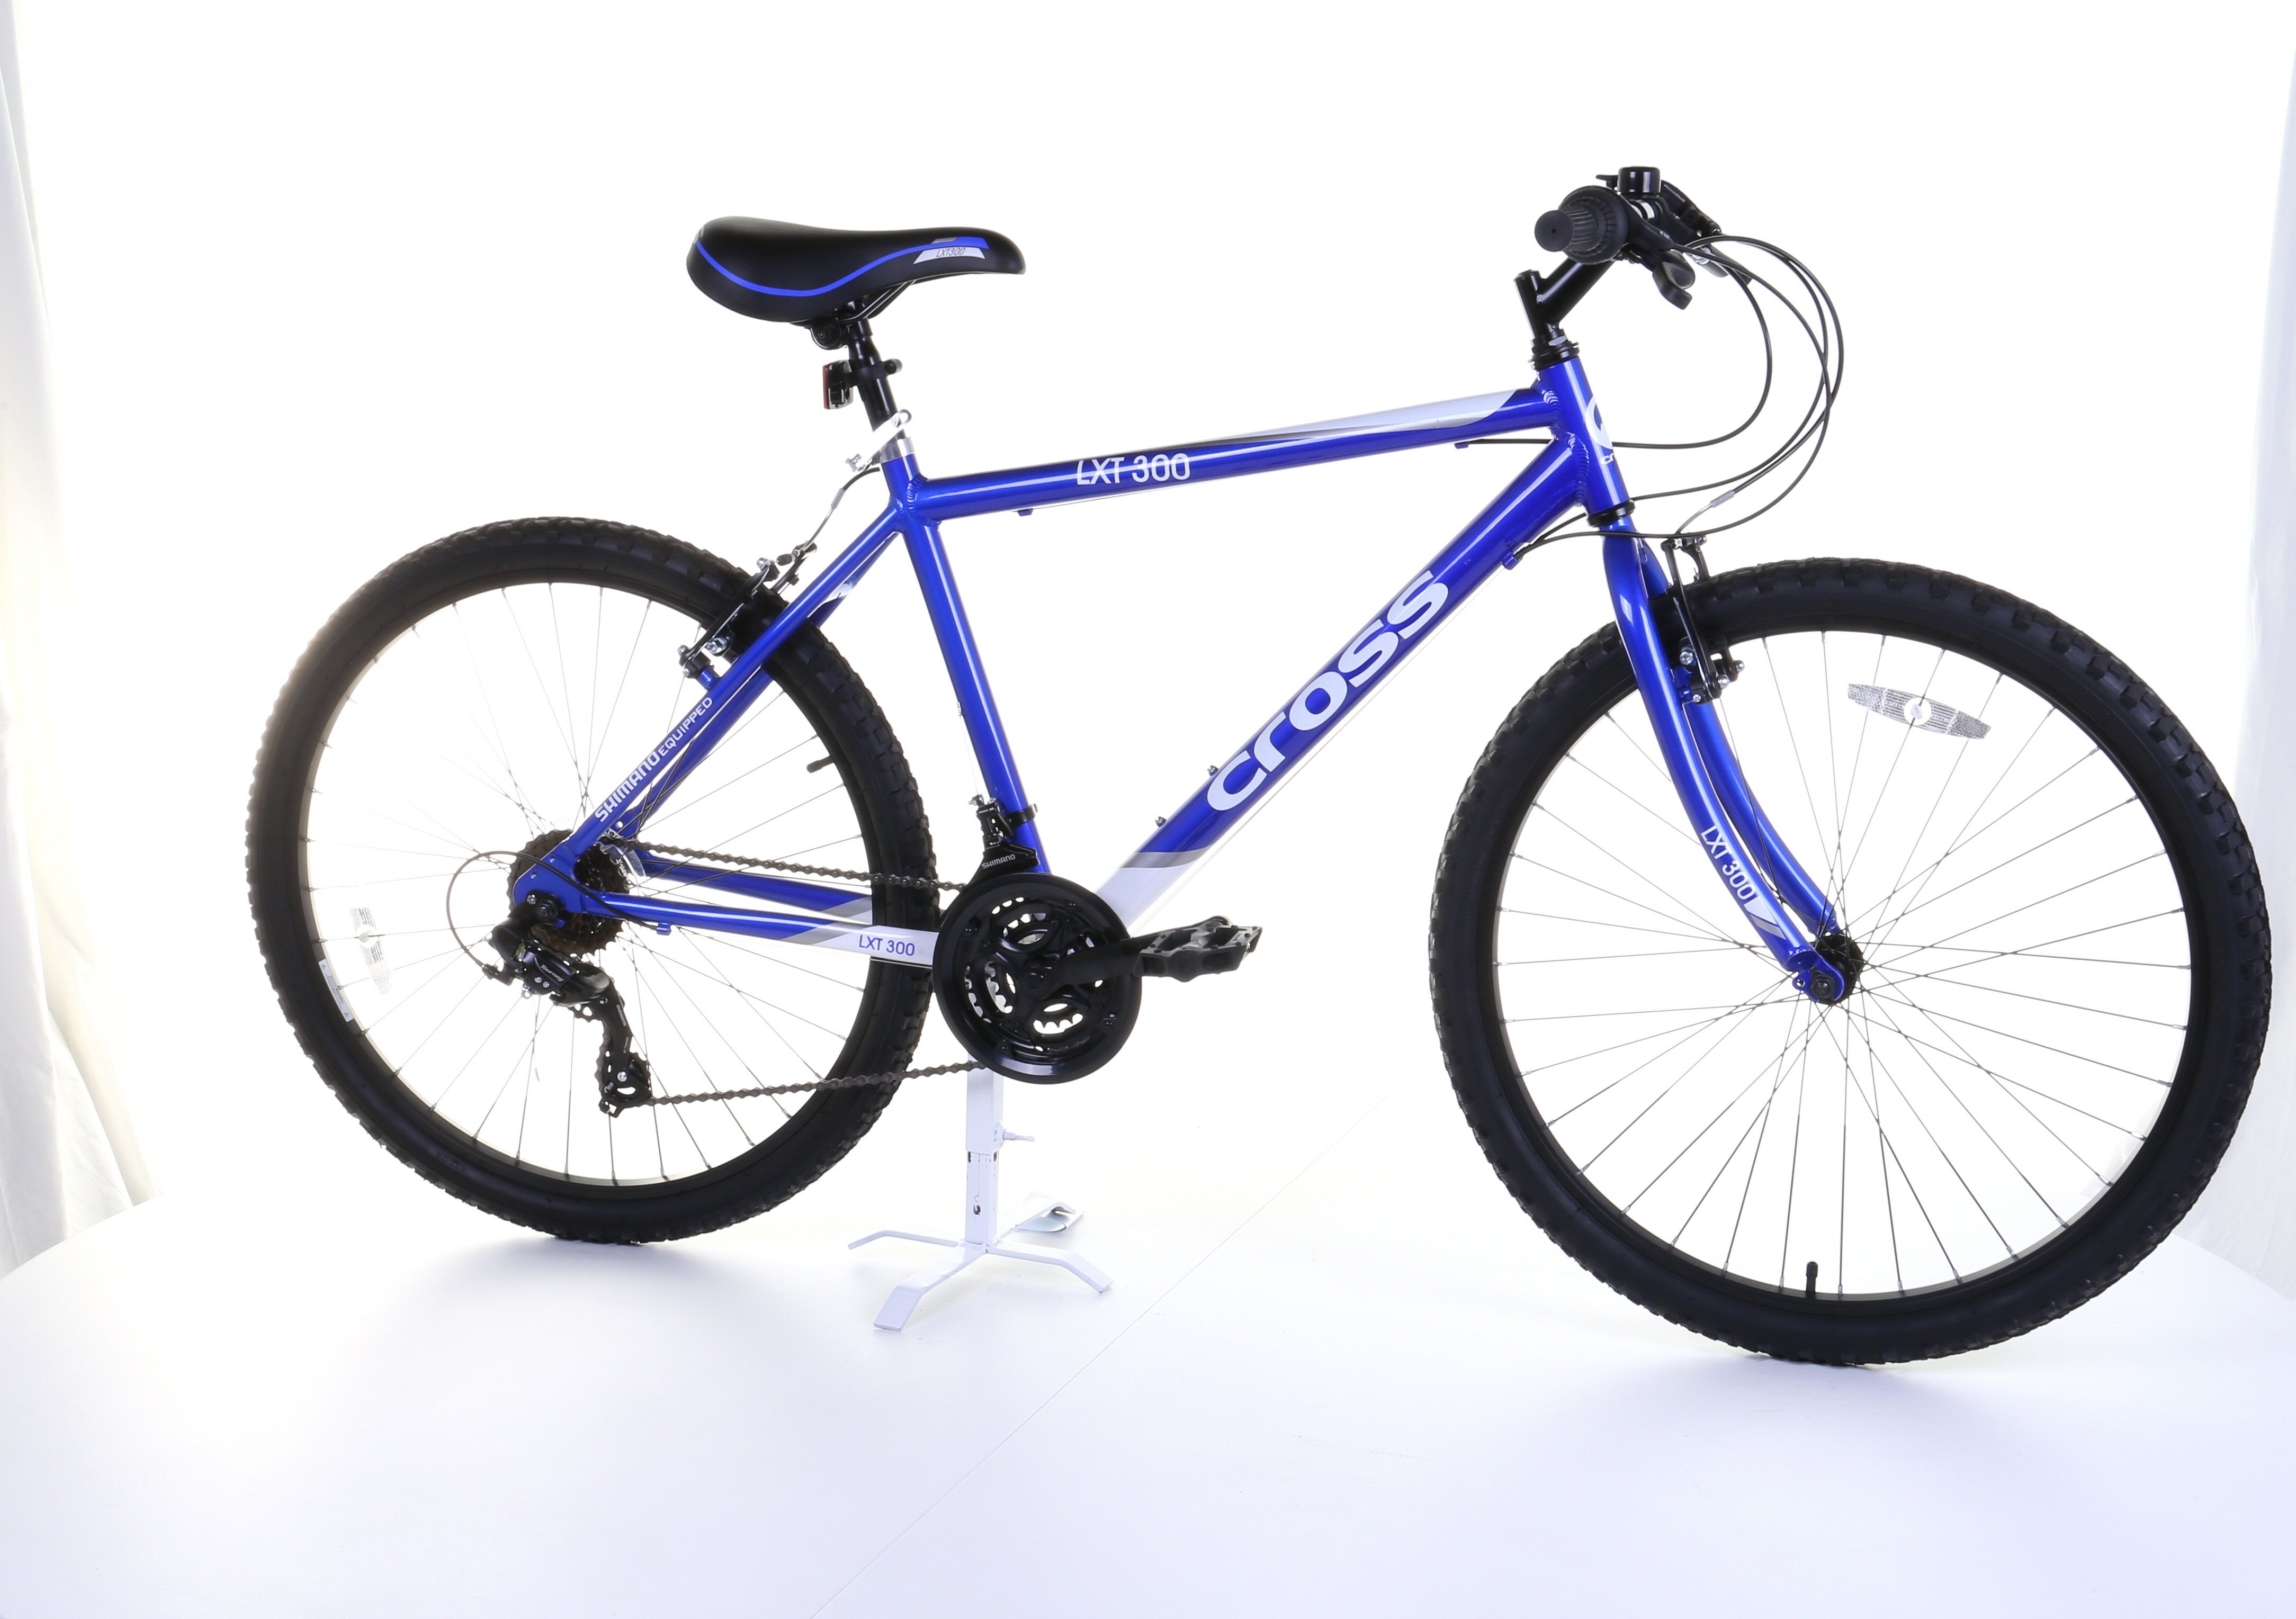 cross fxt500 26 inch wheel size mens mountain bike